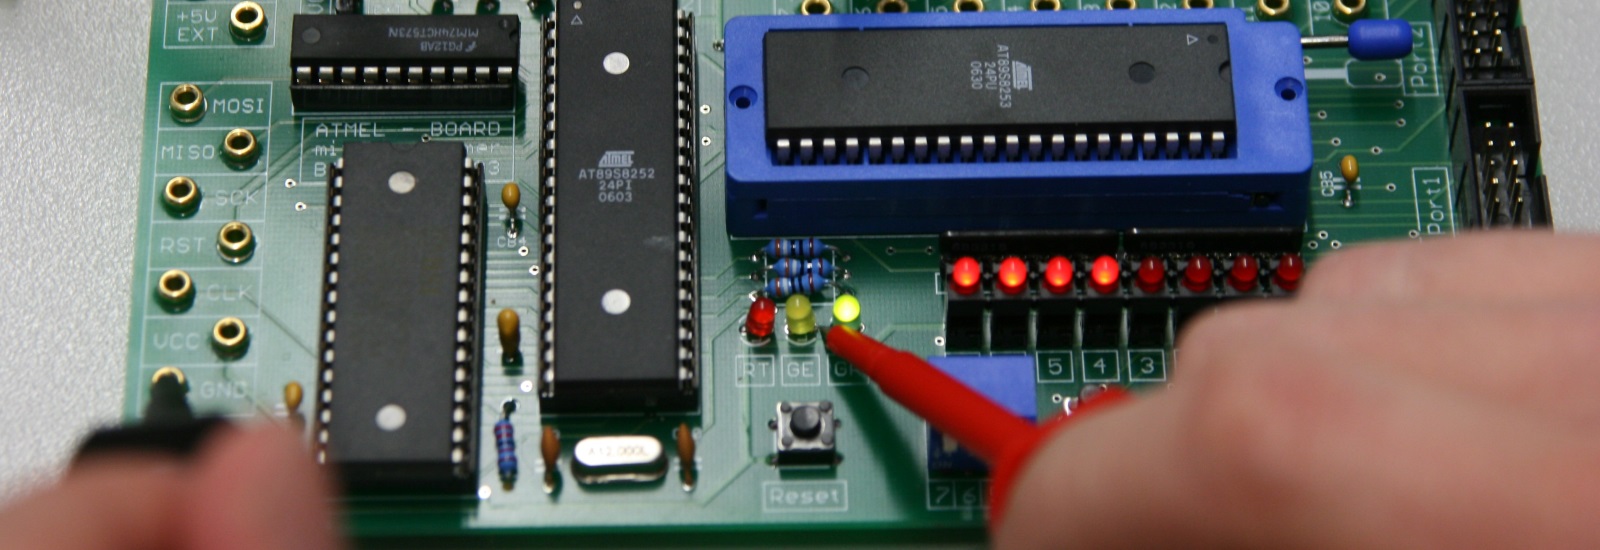 placa de circuito impresso contendo 3 processadores da Atmel, leds vermelho, amarelo e verde, teste com ponta de prova de multímetro no led amarelo